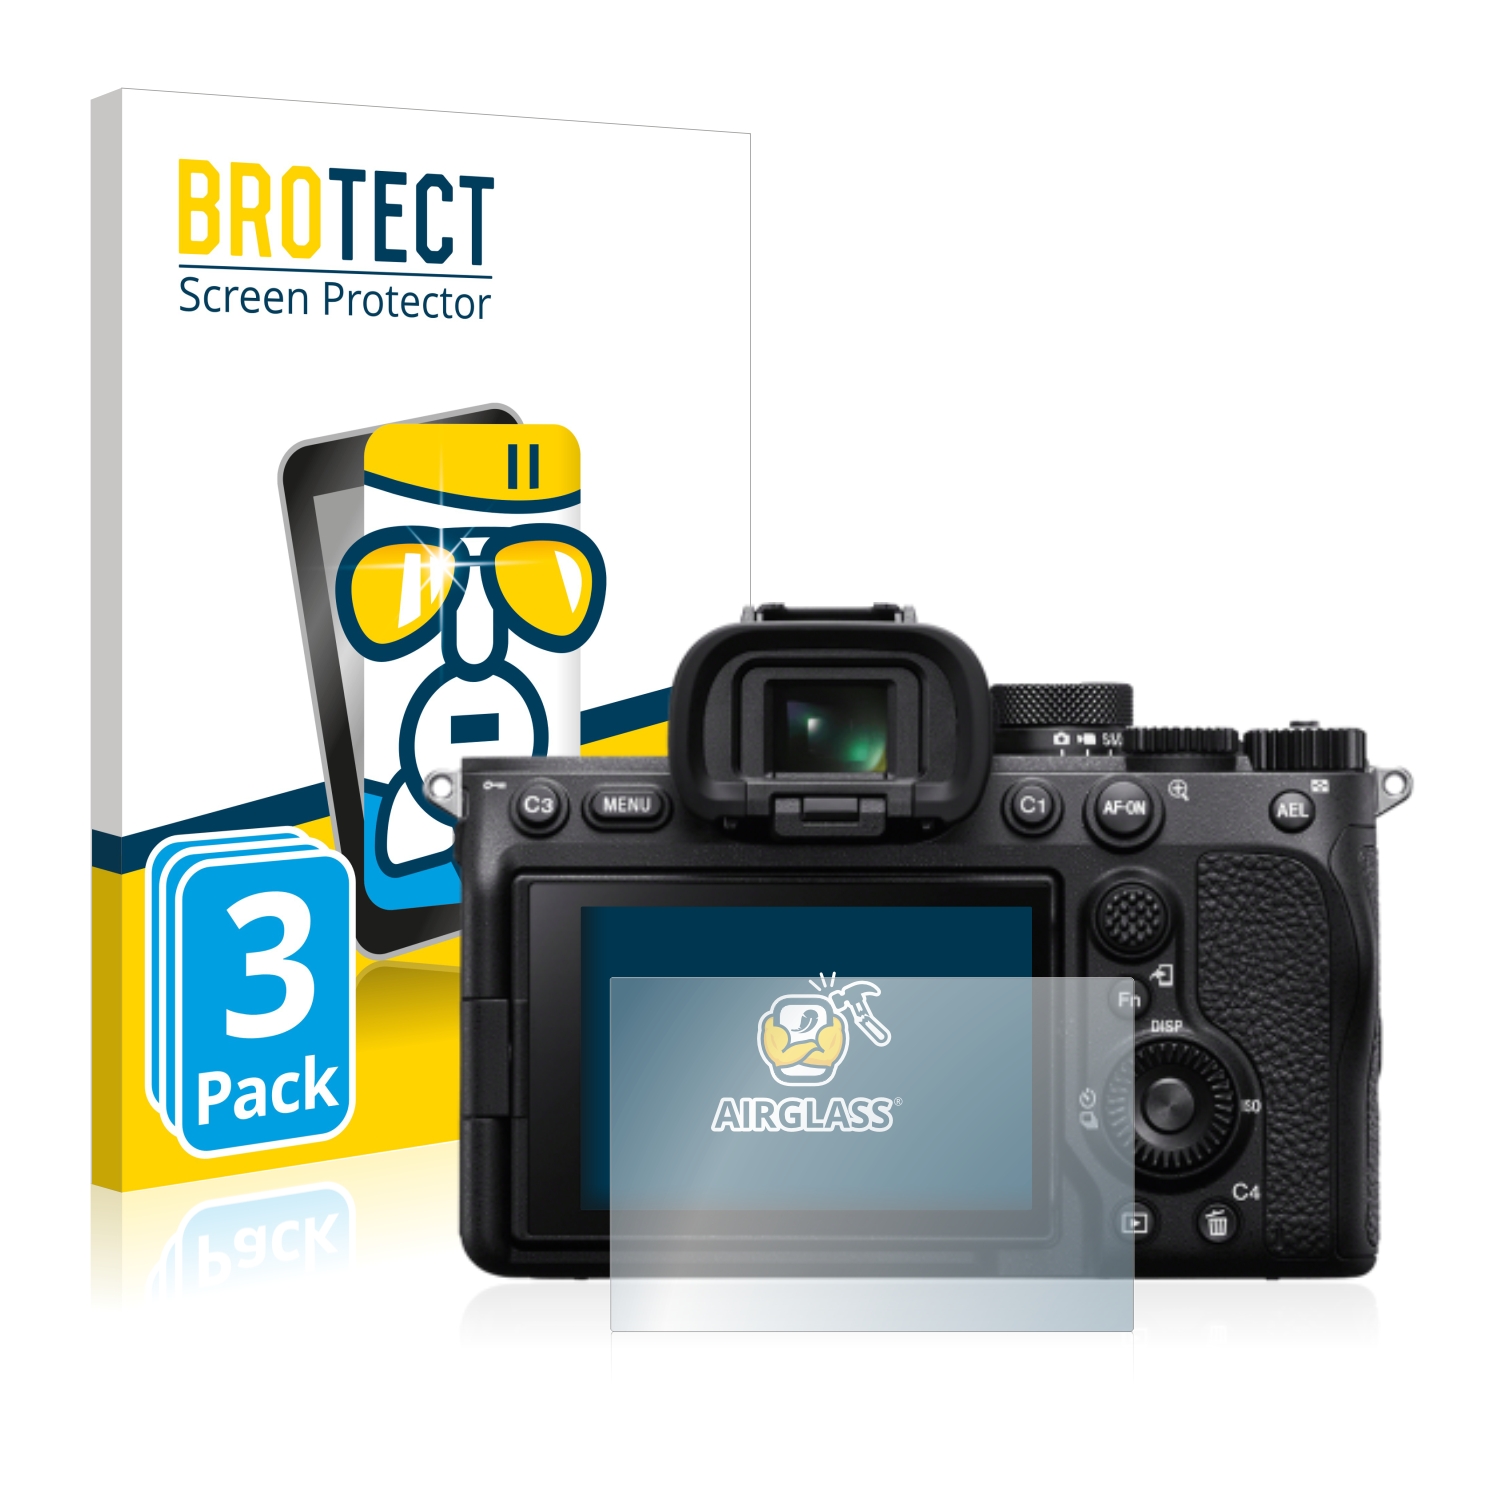 Mat 7.6 cm 67.4 mm x 38.4 mm, 16:9 - Film Protecteur Vitre 9H brotect 3 Anti-Reflet Protection Ecran Verre pour Caméscope avec 3,0 Pouces